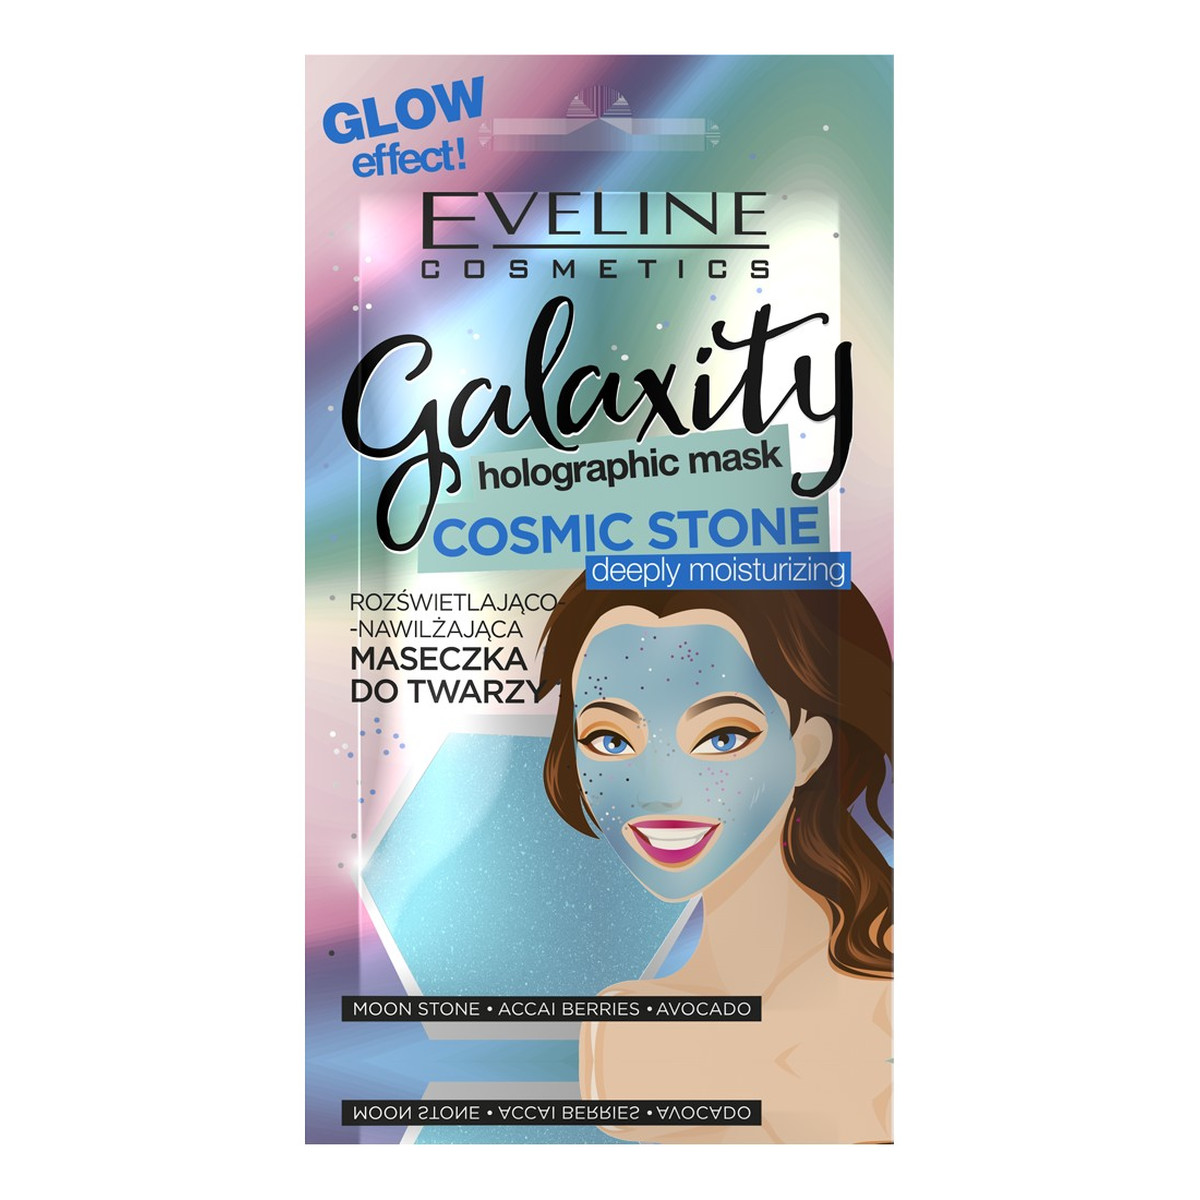 Eveline Galaxity Holographic Mask Maseczka do twarzy rozświetlająco-nawilżająca Cosmic Stone 10g